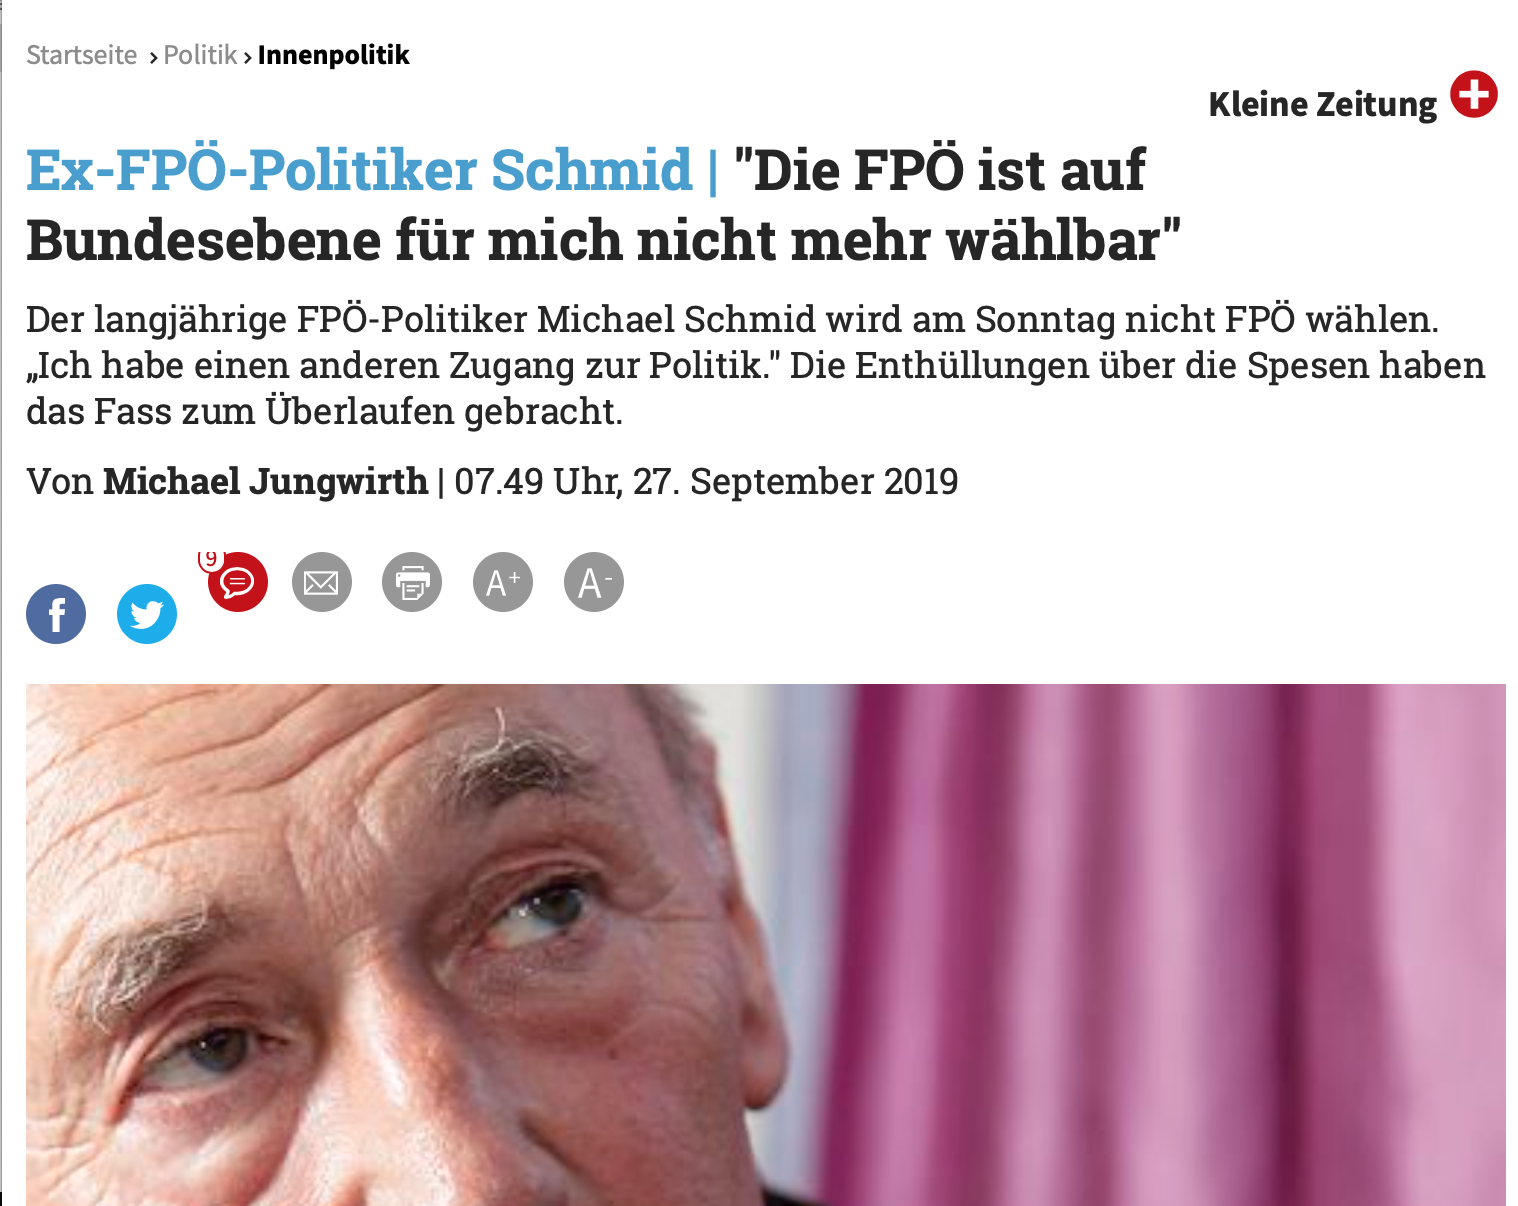 Michael Schmid: "Die FPÖ ist für mich auf Bundesebene nicht wählbar" (Kleine Zeitung)